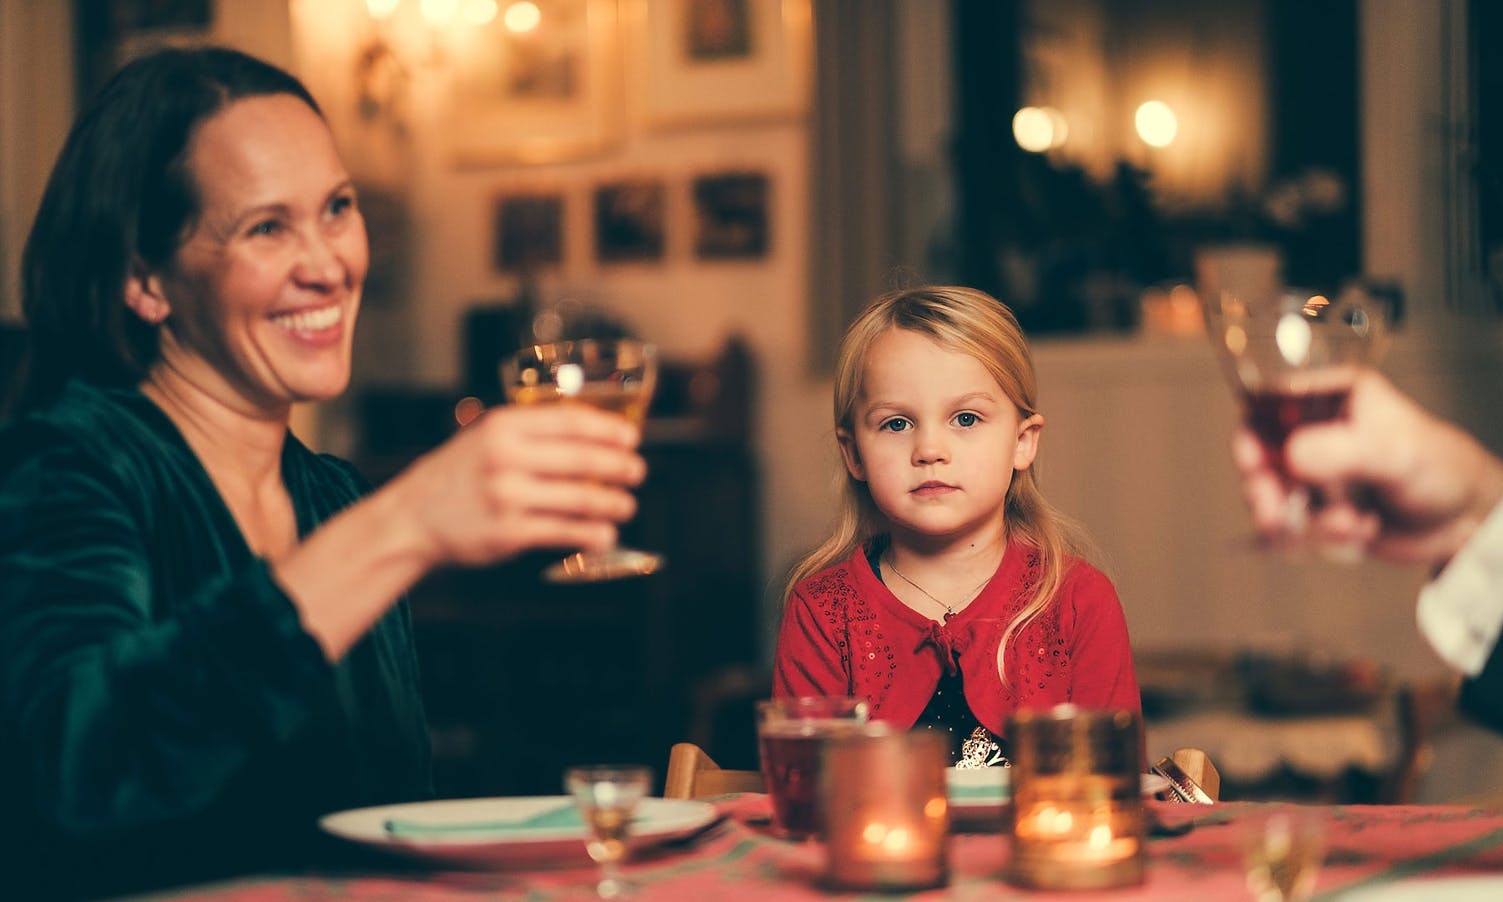 Vestland: 1 av 4 har sett berusede voksne sammen med barn i jula